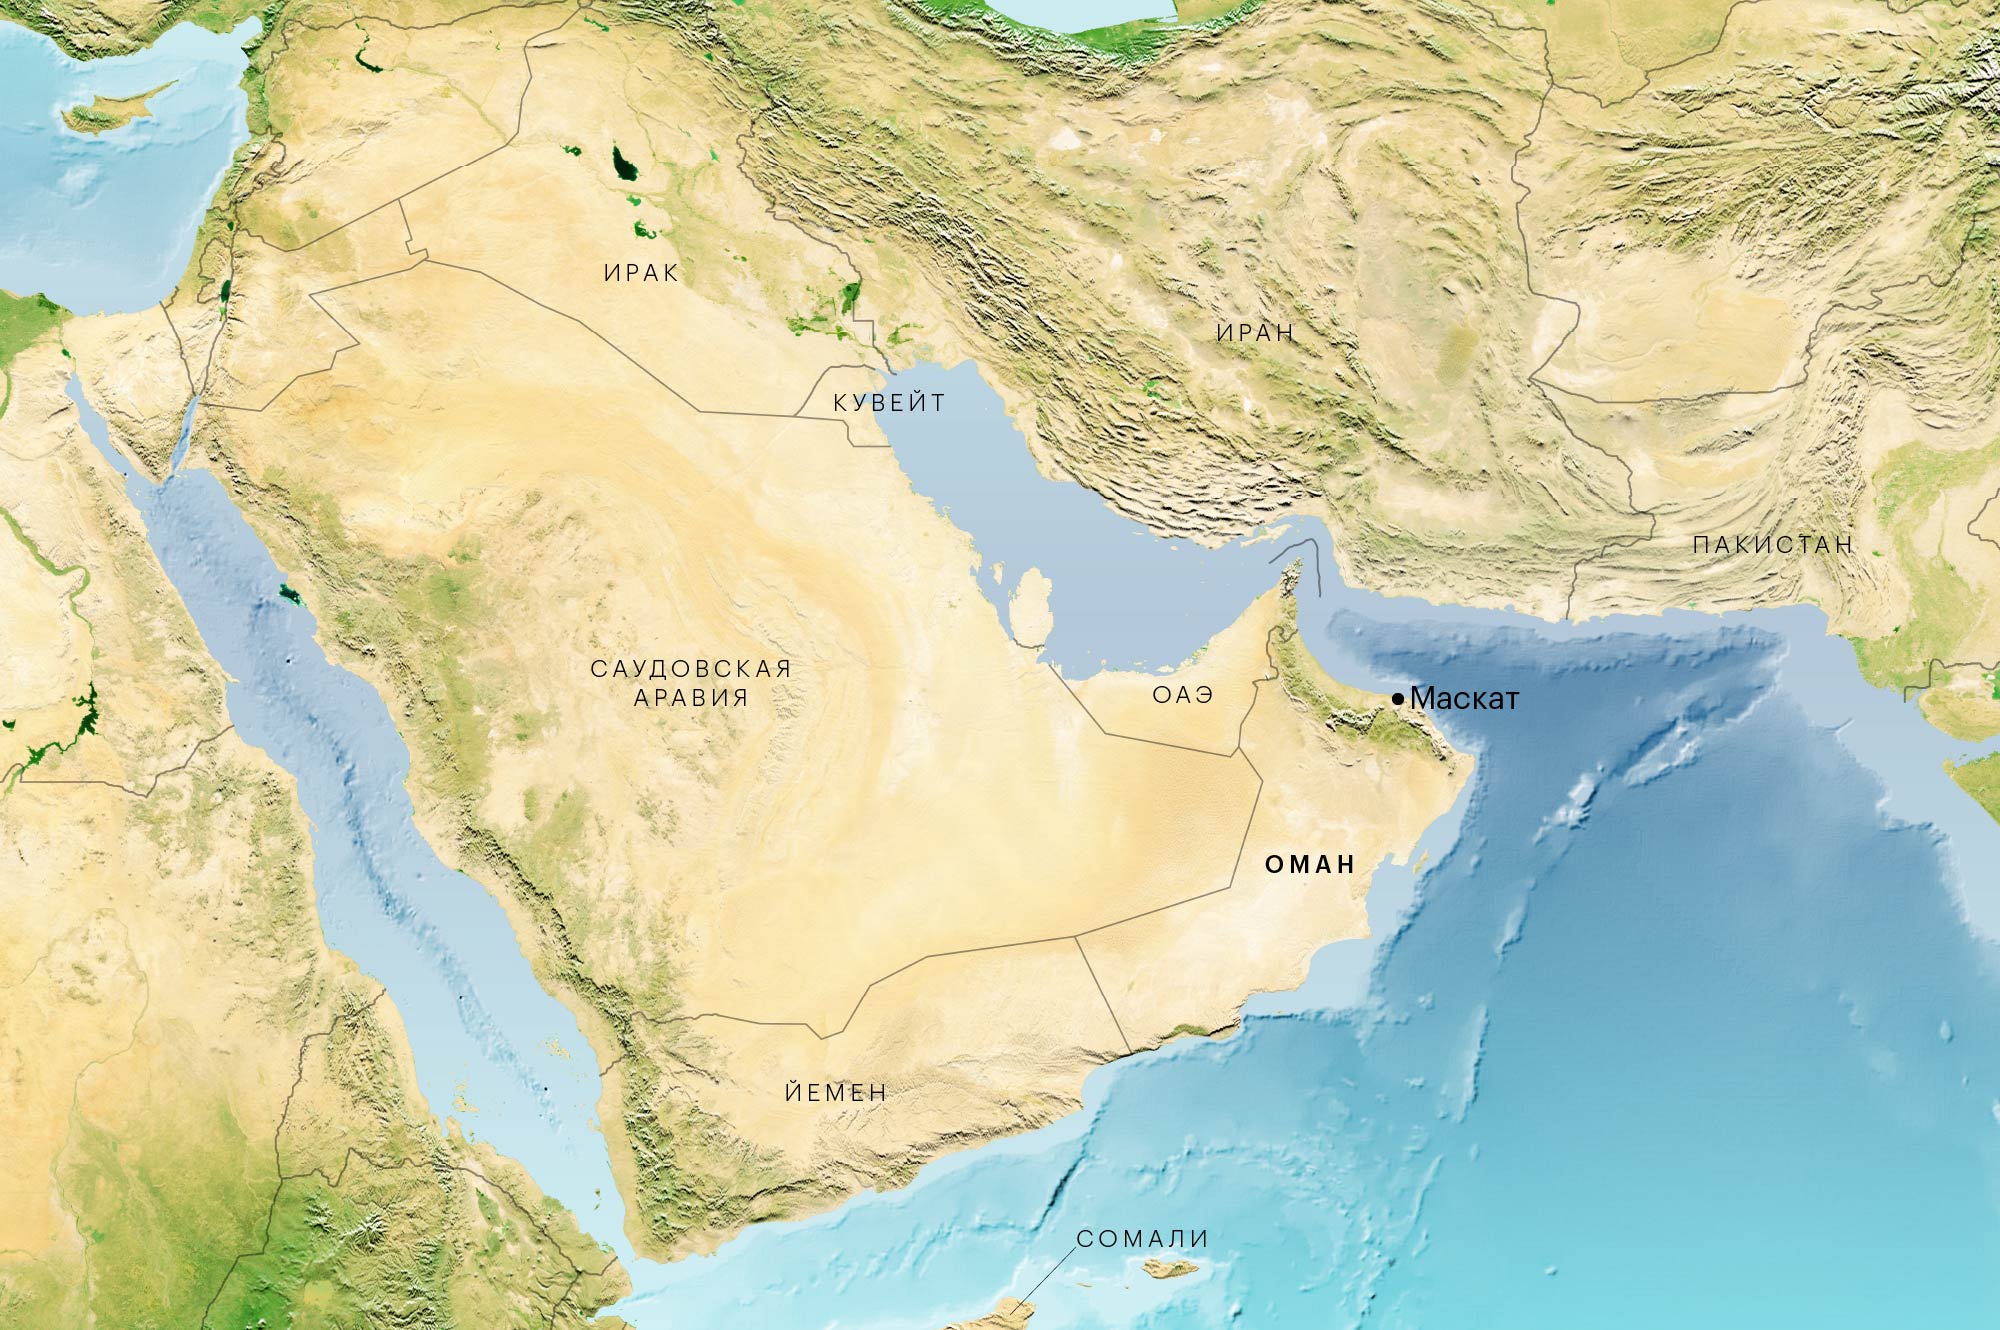 Оман находится в одной из самых горячих точек на планете — причем горячей во всех смыслах